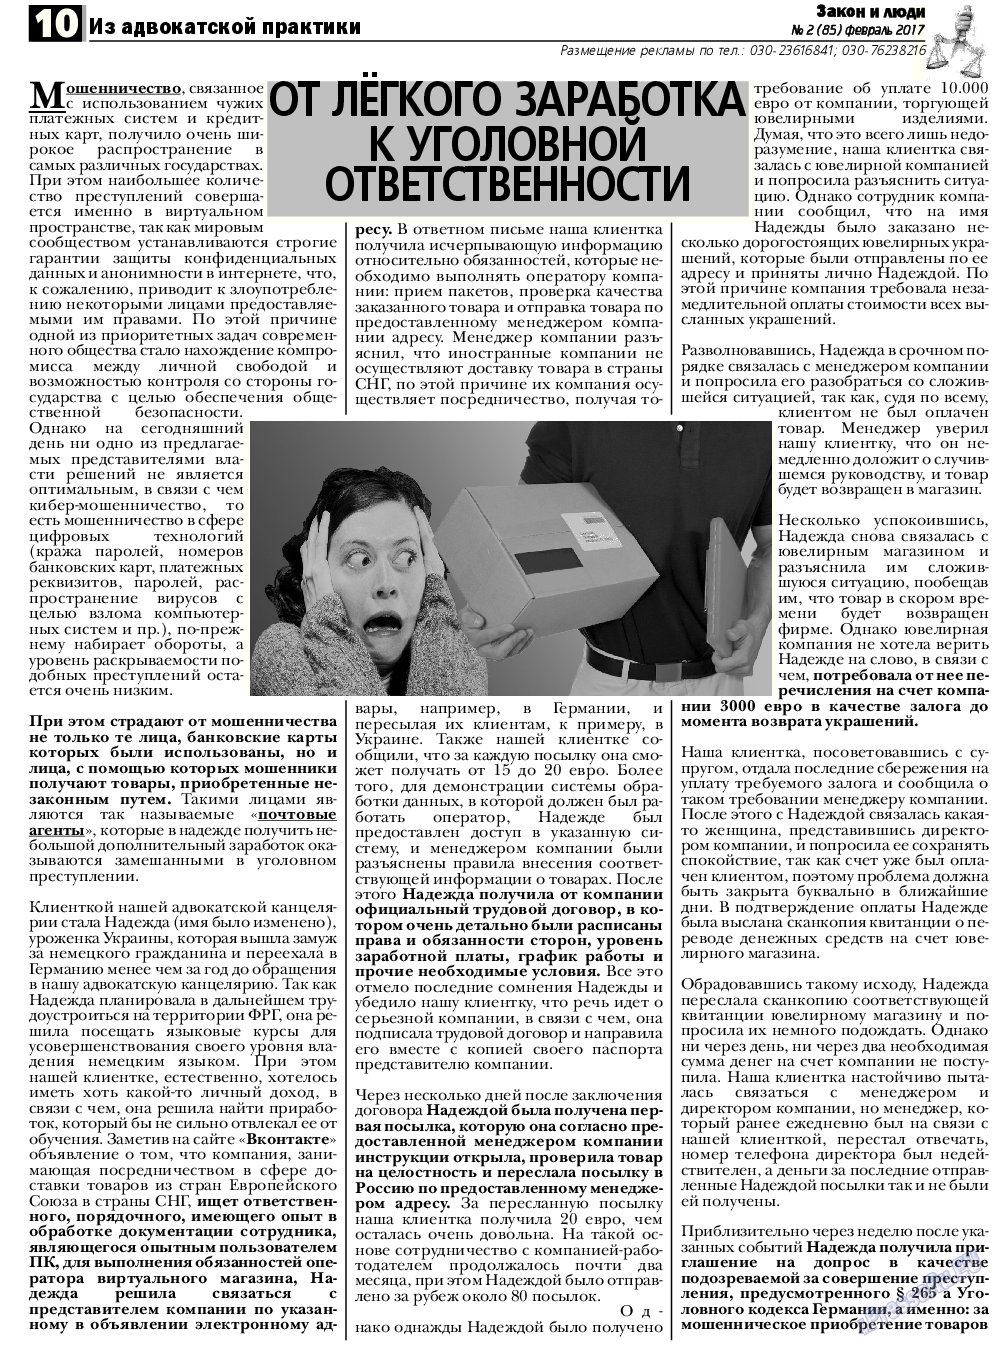 Закон и люди, газета. 2017 №2 стр.10